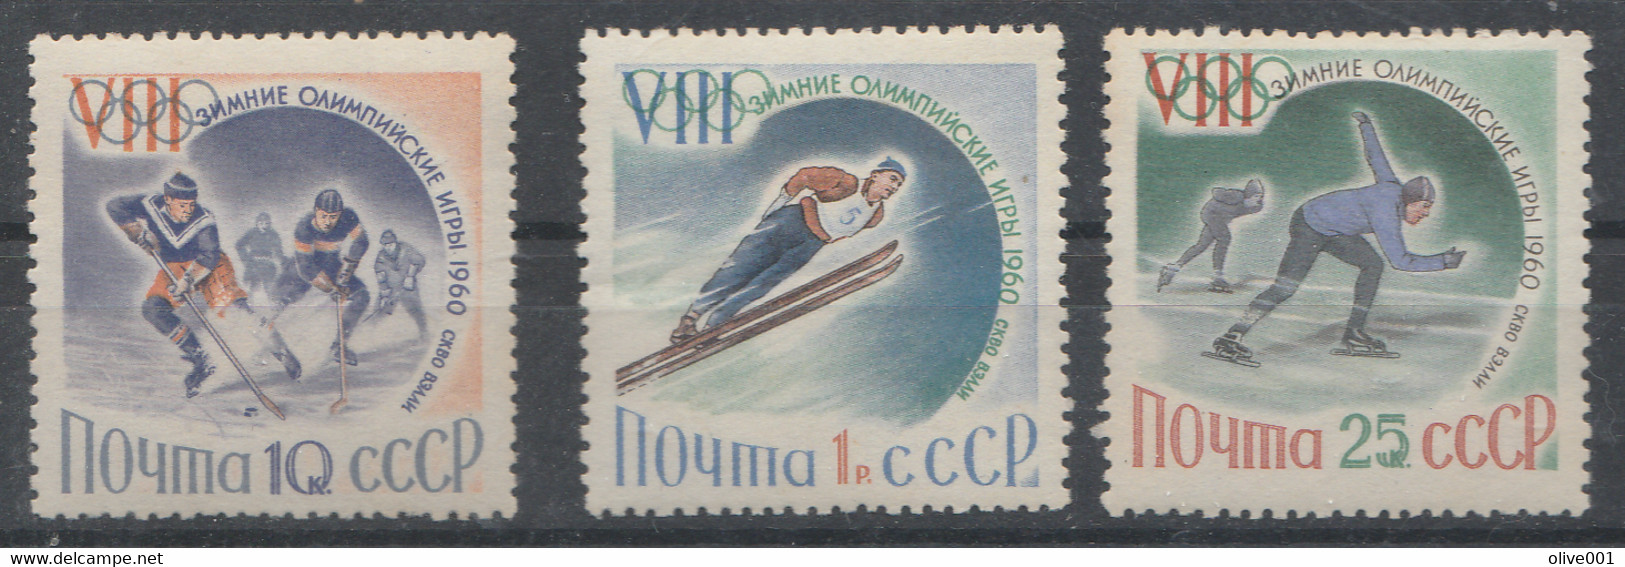 URSS - Timbres De 1960 - 3 Valeurs Des Jeux Olympiques D'hiver De Squaw Valley - MI N° 2317/19 MNH ** - Invierno 1960: Squaw Valley